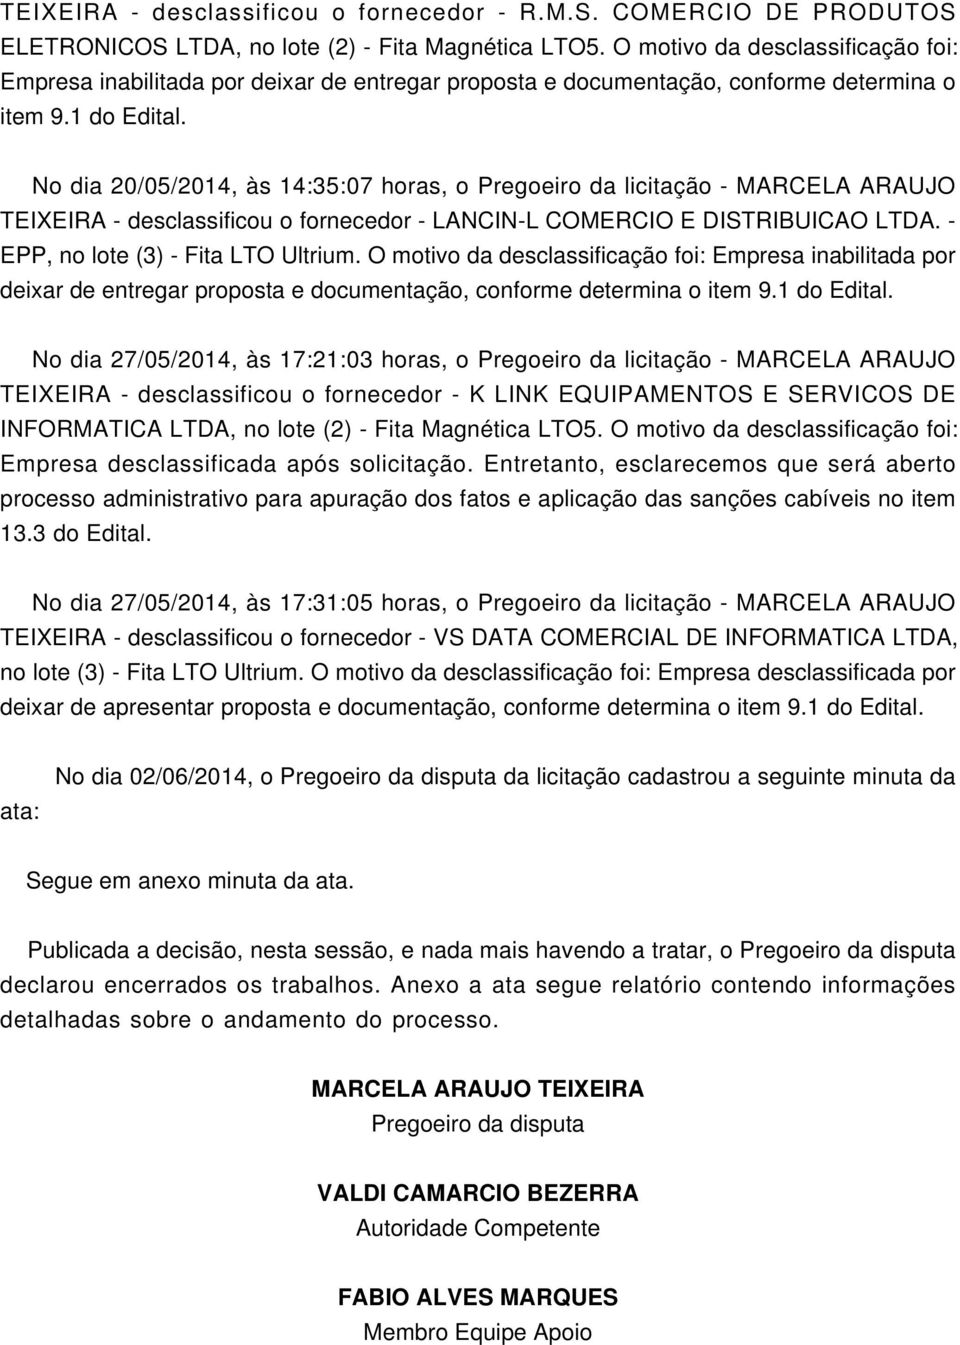 No dia 20/05/2014, às 14:35:07 horas, o Pregoeiro da licitação - MARCELA ARAUJO TEIXEIRA - desclassificou o fornecedor - LANCIN-L CORCIO E DISTRIBUICAO. - EPP, no lote (3) - Fita LTO Ultrium.